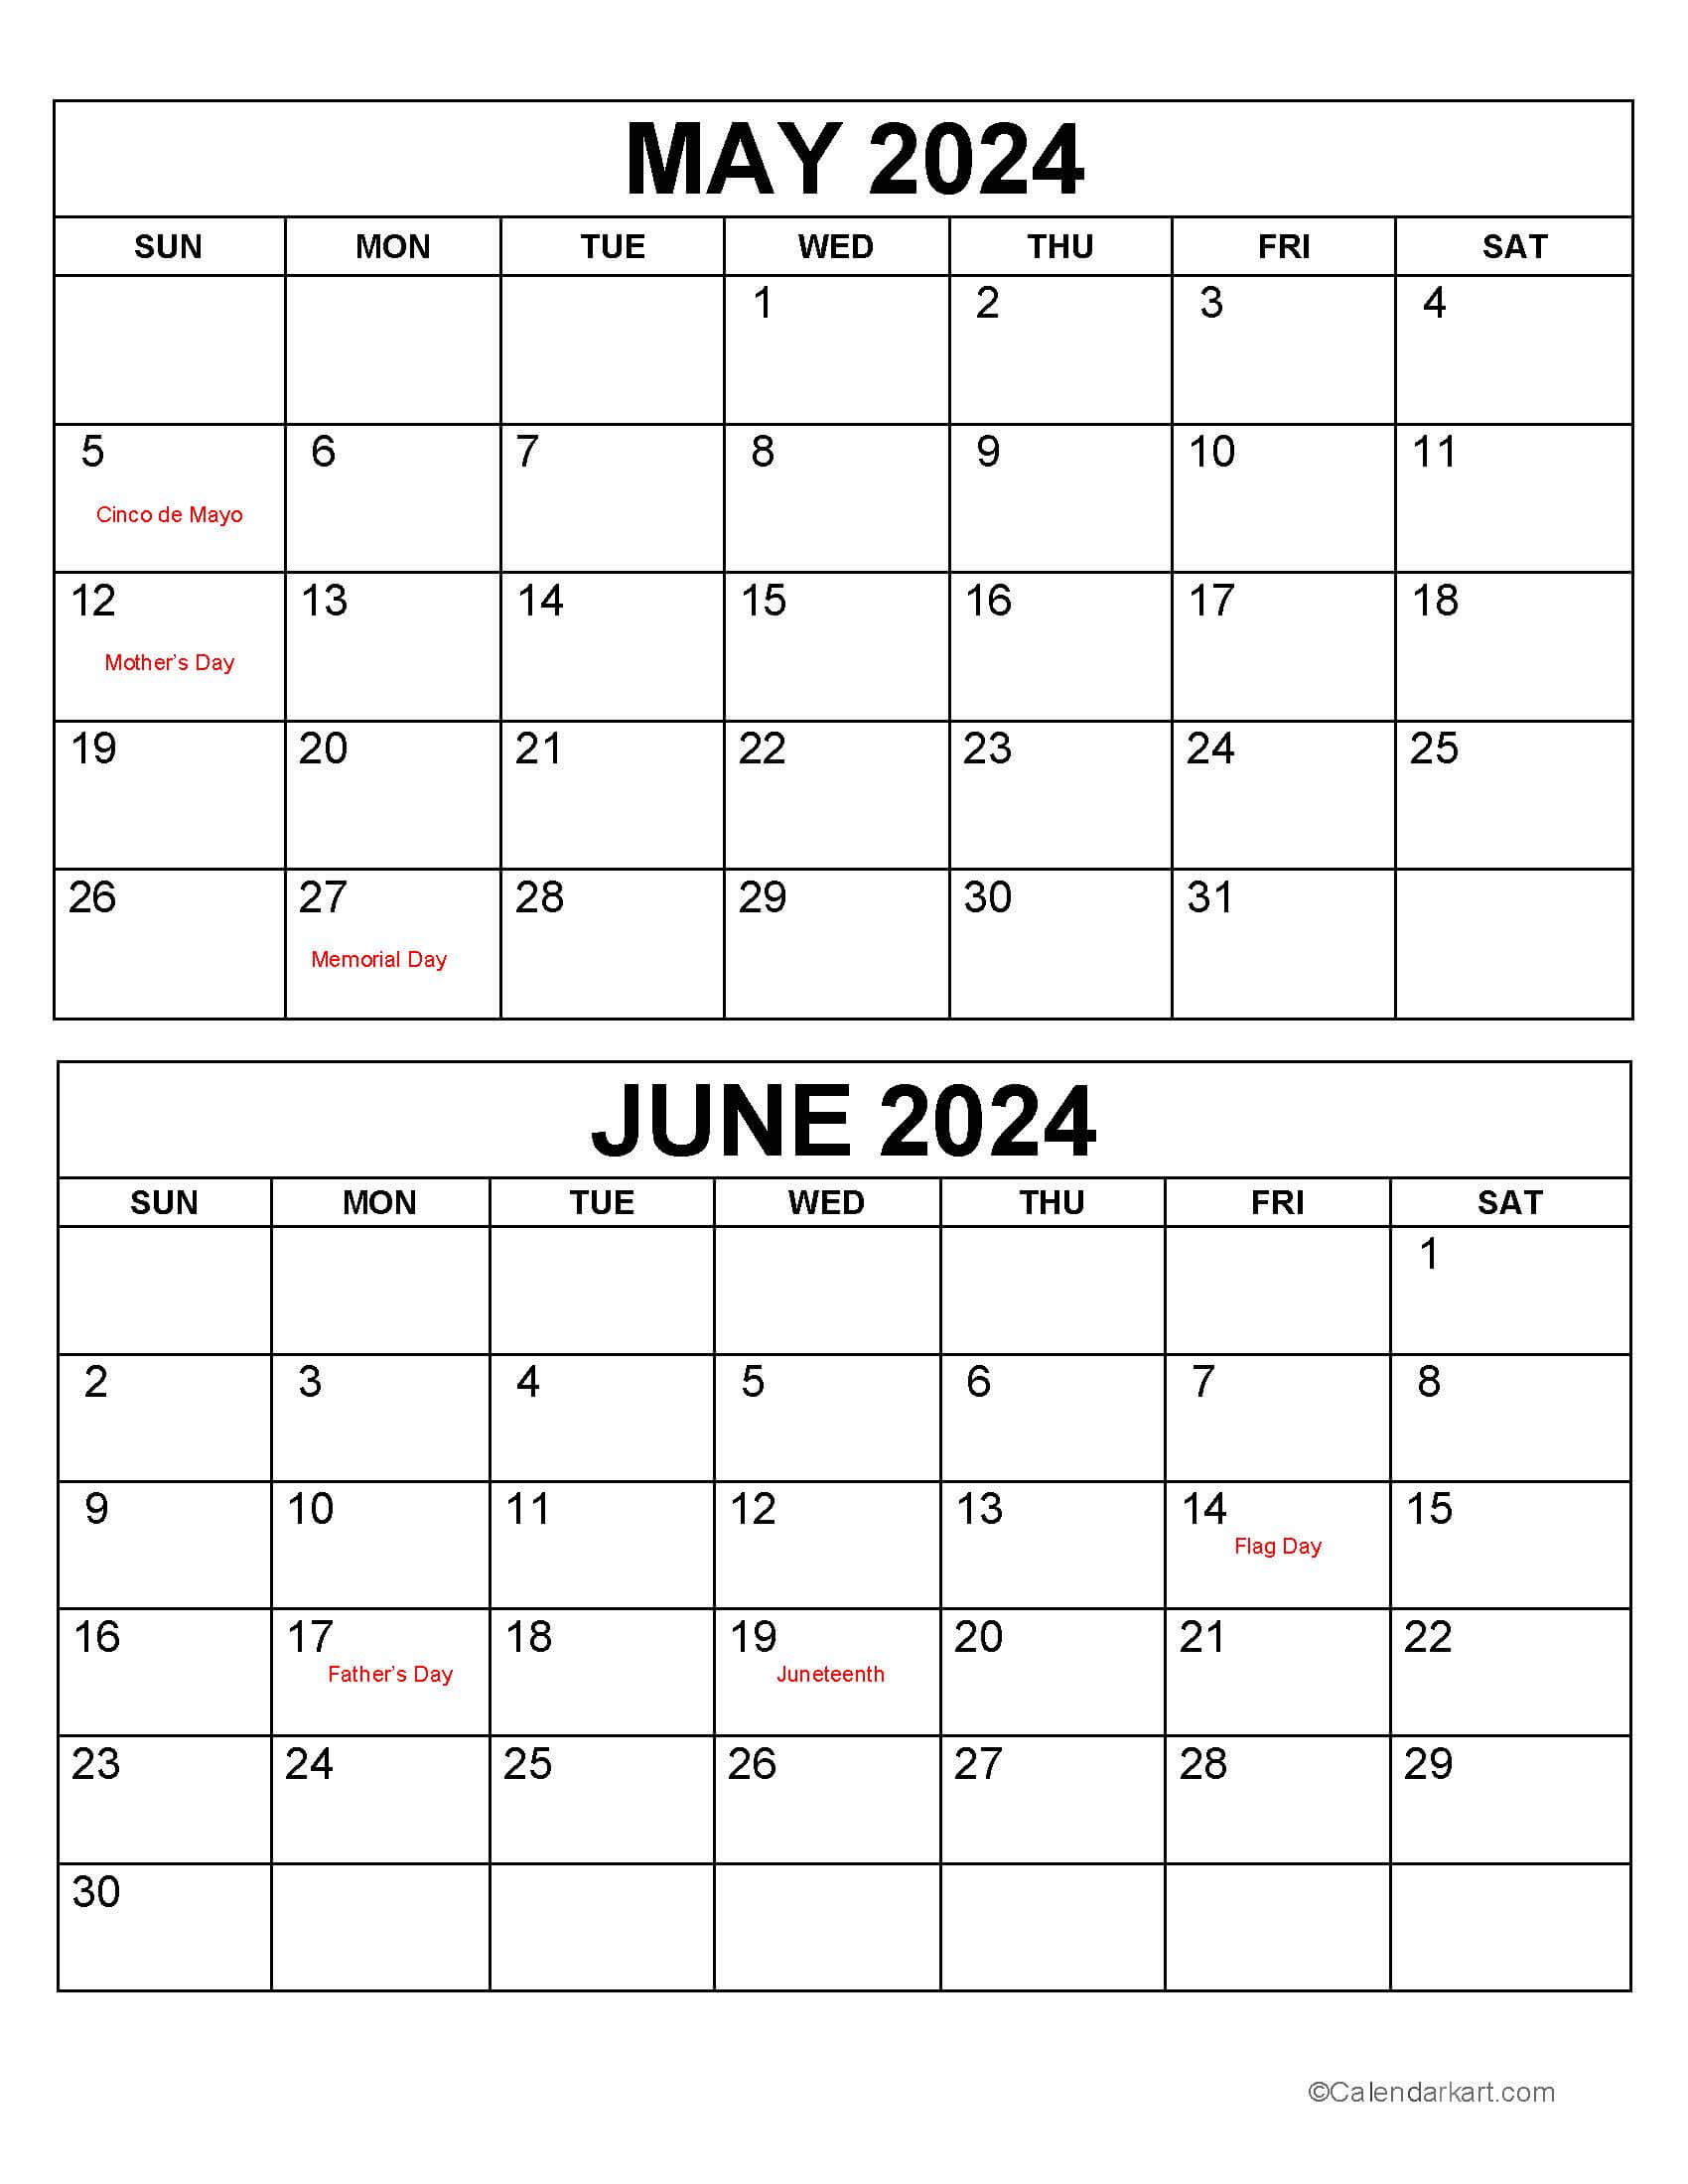 May June 2024 Calendars (3Rd Bi-Monthly) - Calendarkart | Calendar of May and June 2024